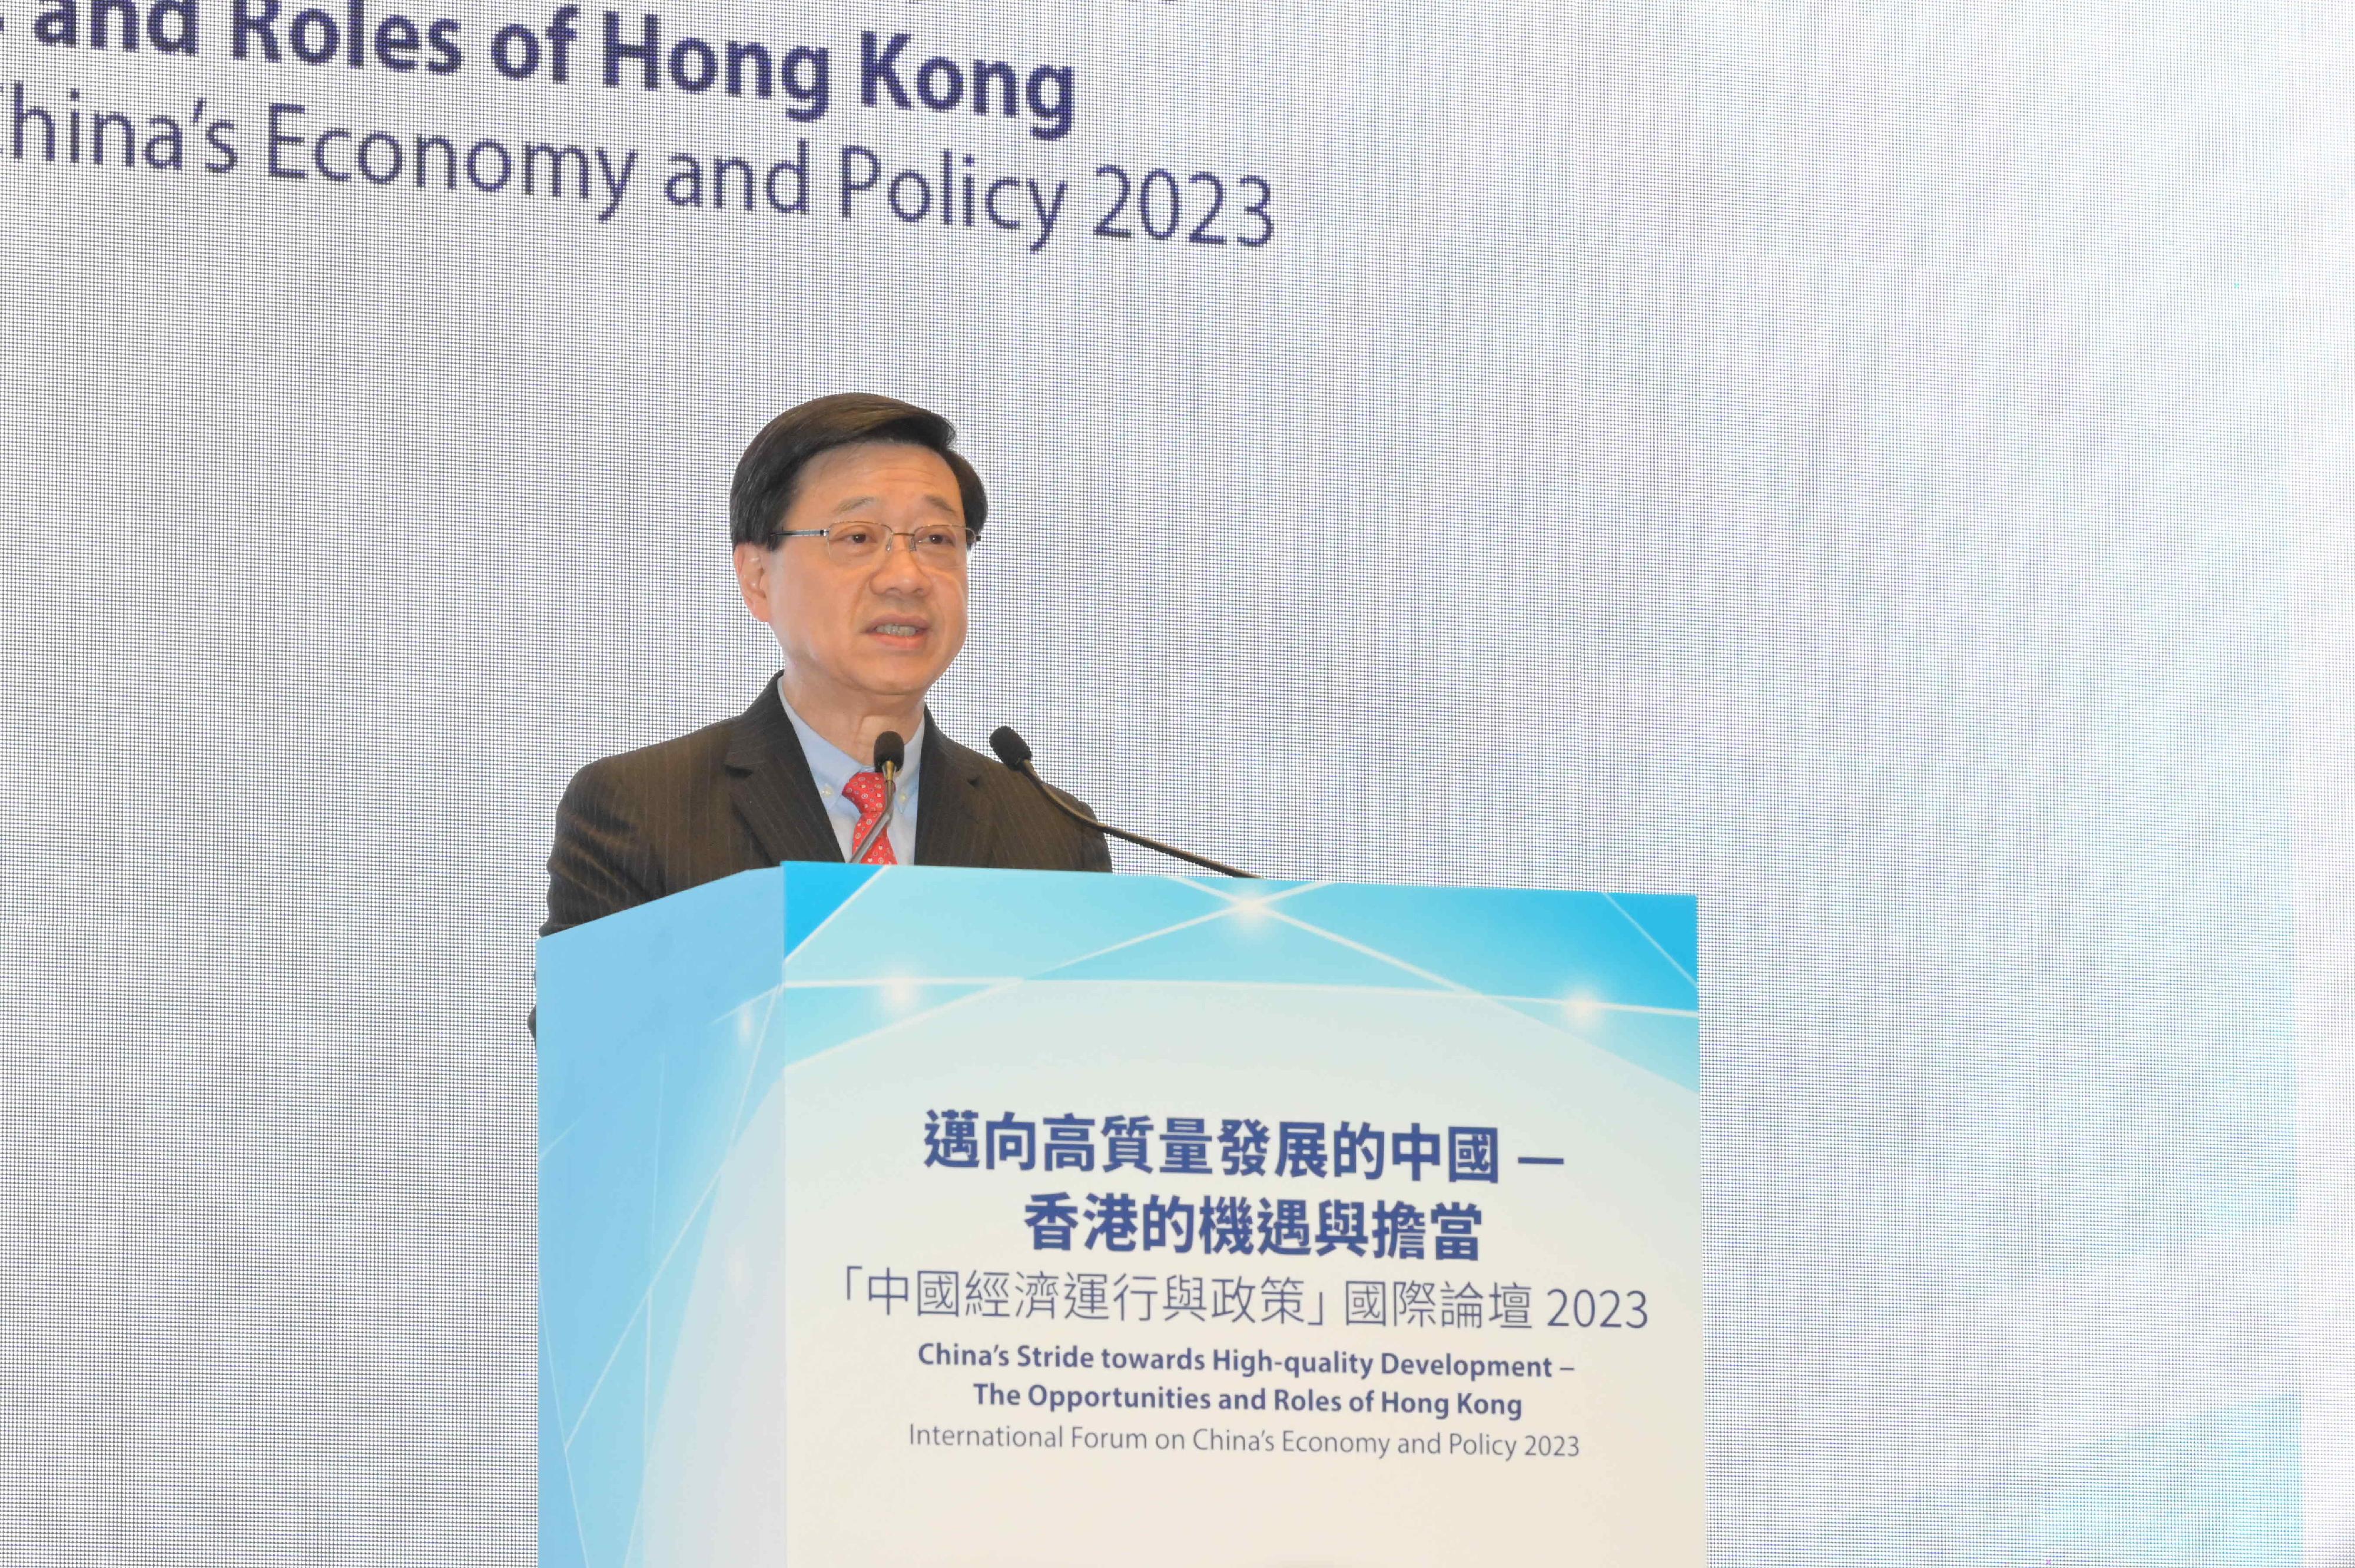 行政长官李家超今日（十一月十五日）在迈向高质量发展的中国──香港的机遇与担当「中国经济运行与政策」国际論坛2023致辞。